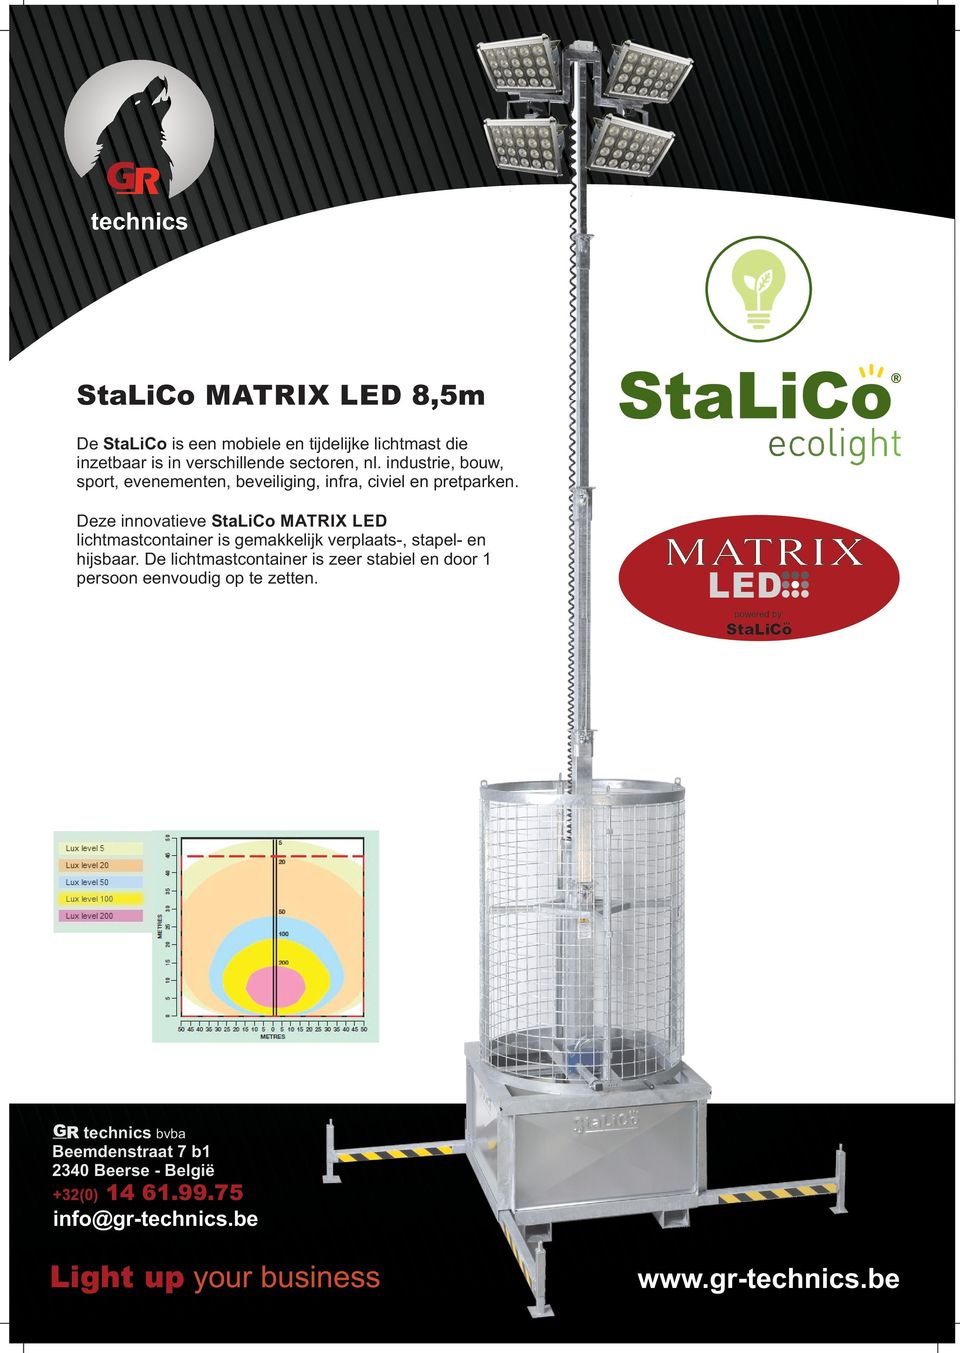 Deze innovatieve StaLiCo MATRIX LED lichtmastcontainer is gemakkelijk verplaats-, stapel- en hijsbaar.